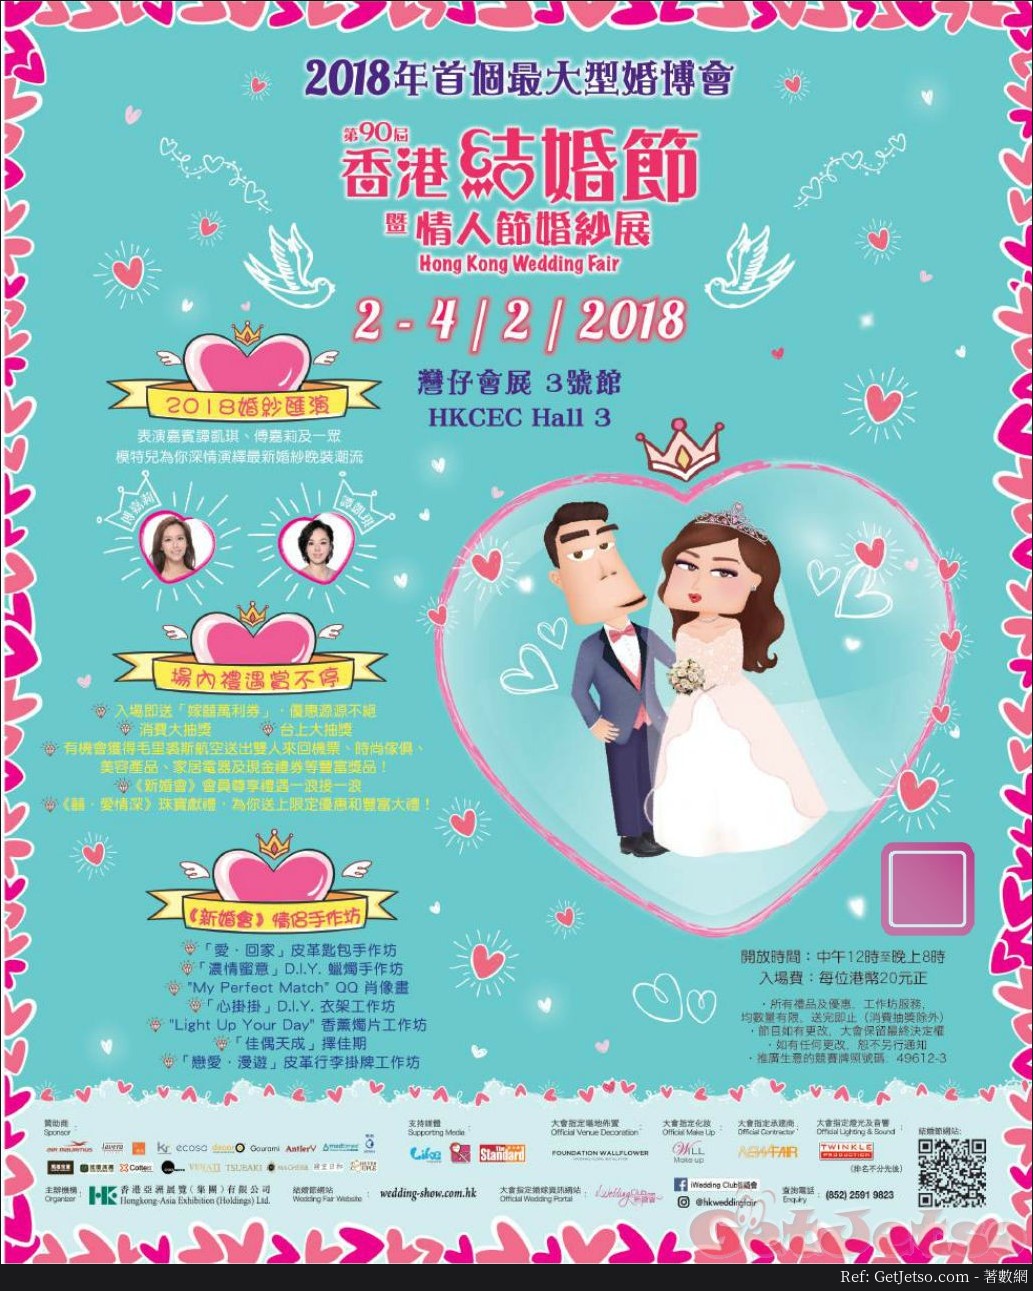 香港結婚節暨情人節婚紗展(18年2月2-4日)圖片1